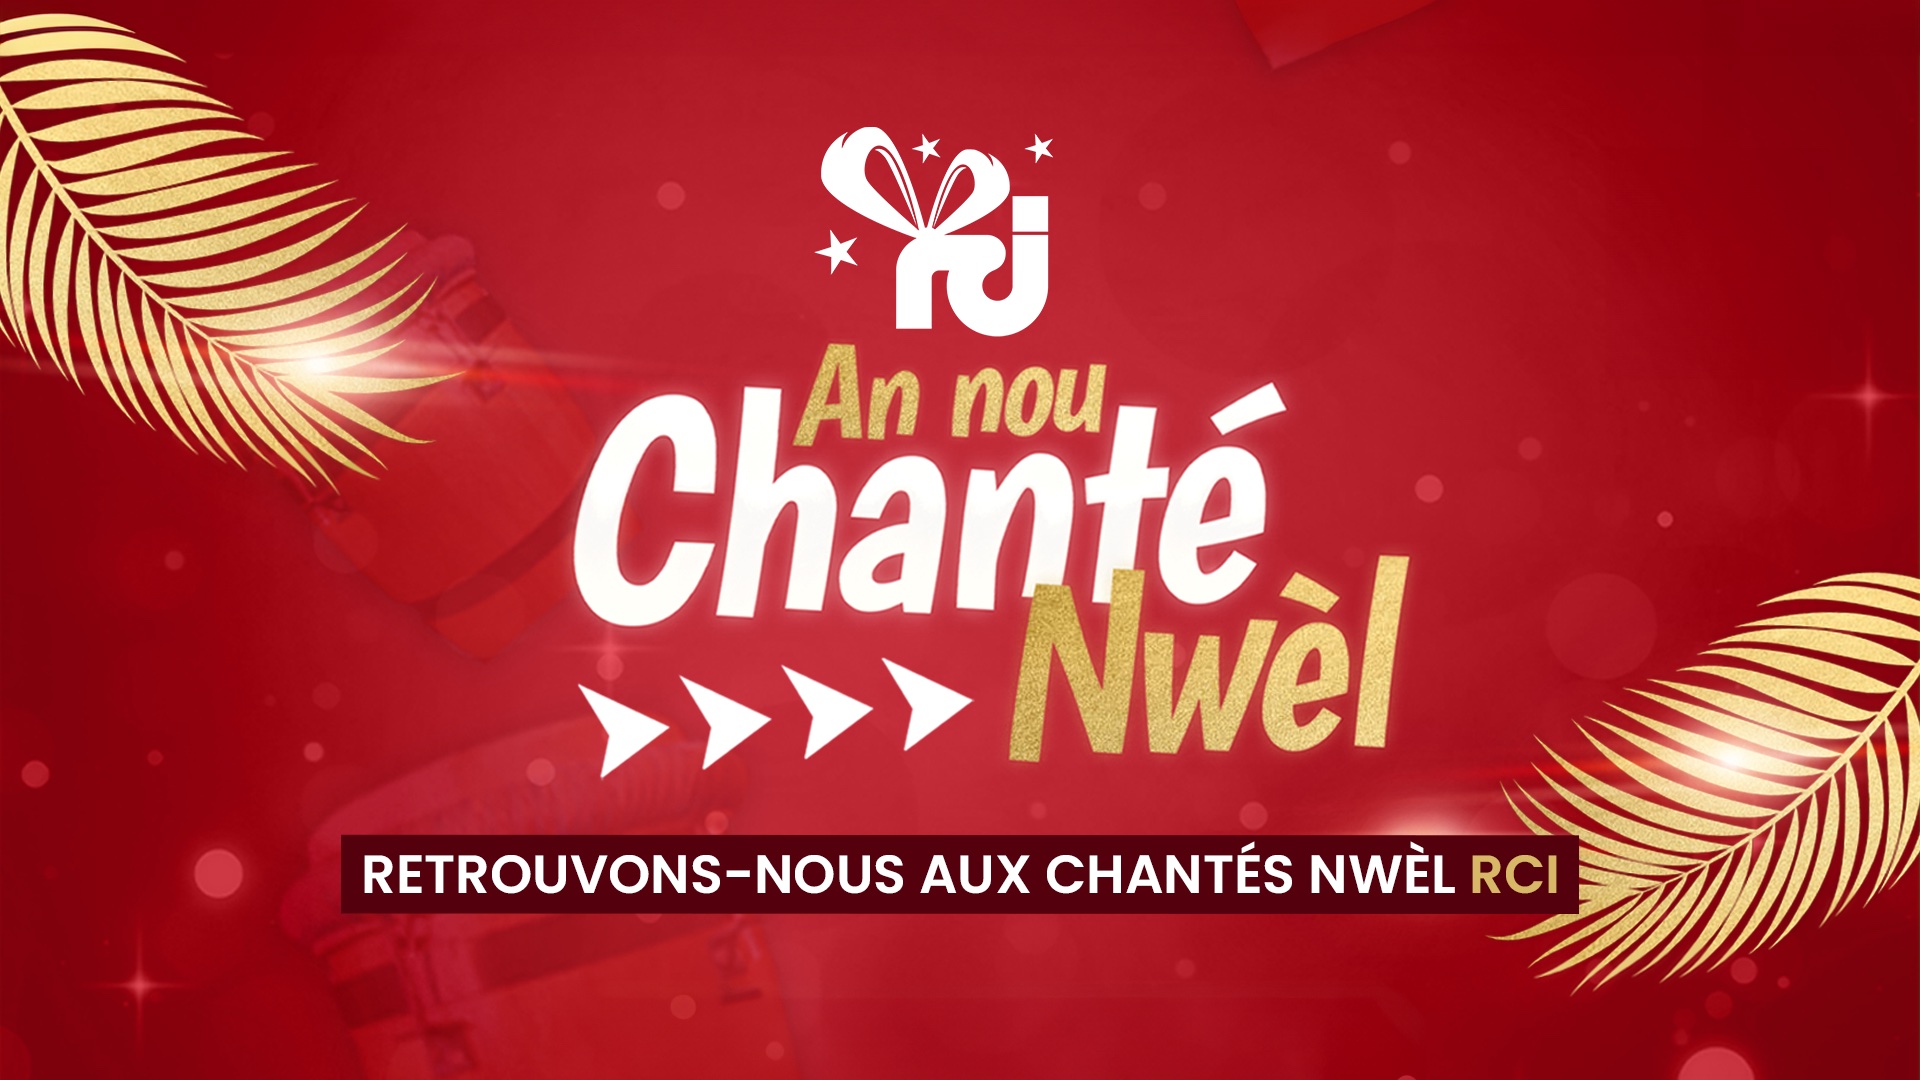     Info pratique : toutes les dates des Chanté Noël de RCI Guadeloupe !

